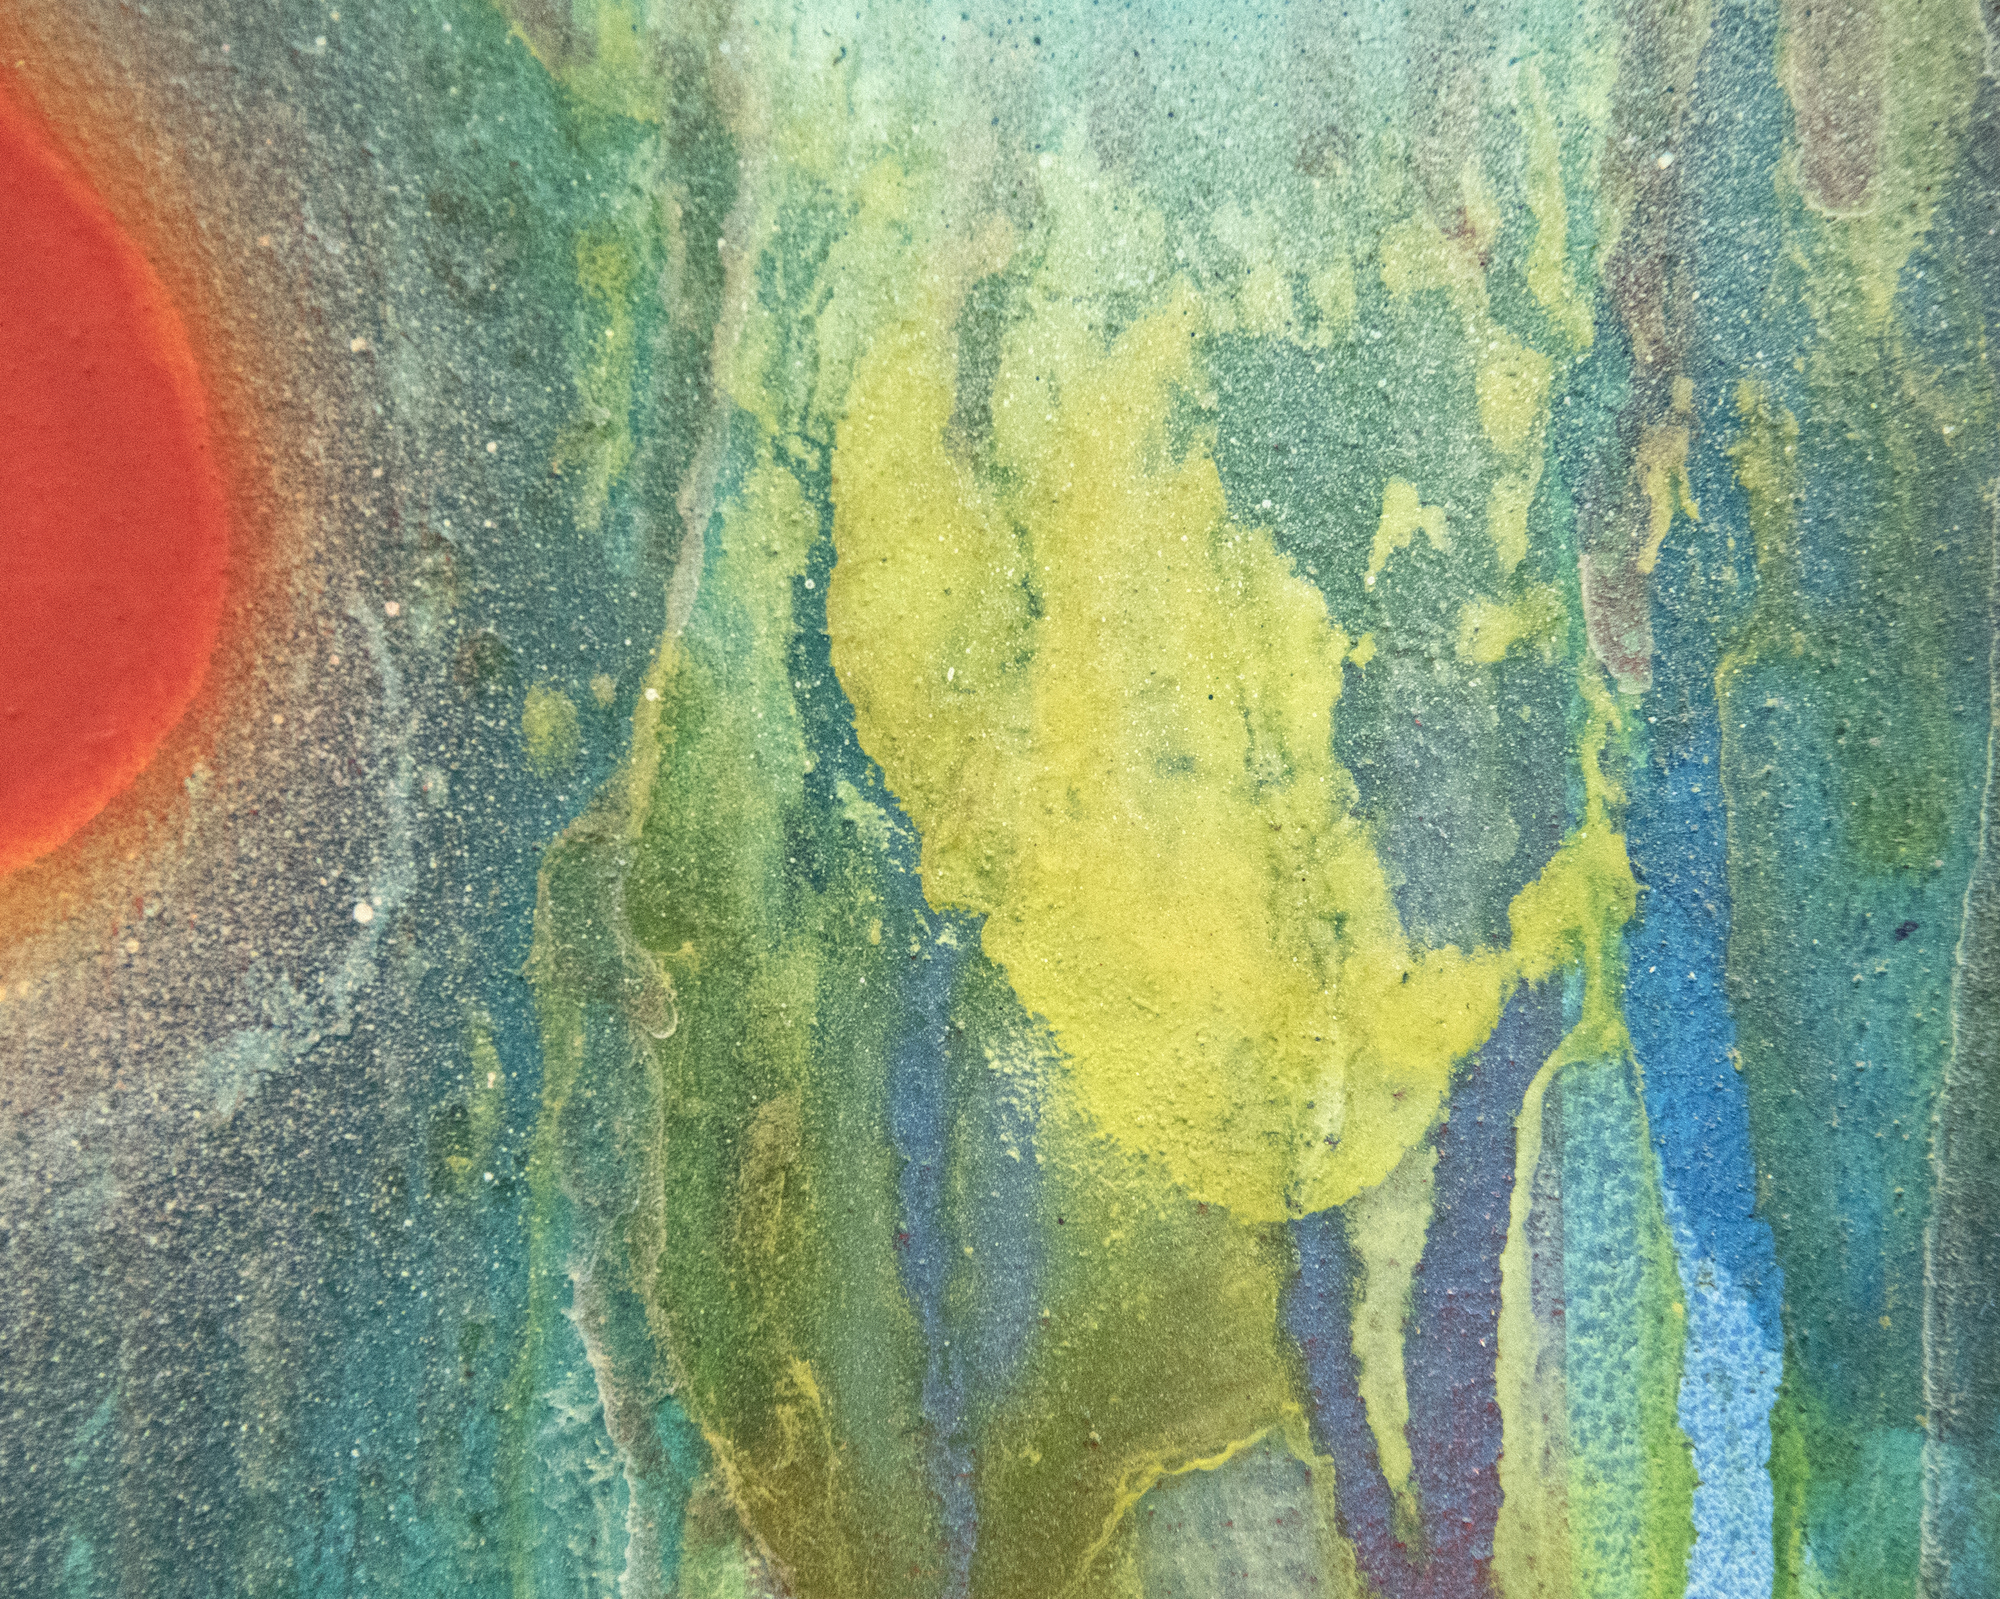 Como miembro de la legendaria Asociación de Arte Gutai, que floreció entre 1954 y 1972, Sadamasa Motonaga surgió cuando el existencialismo surrealista post-atómico estaba a la vanguardia del desarrollo artístico en Japón. Sin embargo, eligió un camino diferente. Dio la espalda a la destrucción provocada por la guerra y creó una obra fresca, jubilosa y lúdica. La obra "Sin título", de 1969, se inscribe en su estilo clásico, que se desarrolló al mismo tiempo que las pinturas de Morris Louis denominadas "Velo". Es una muestra brillantemente lograda de la versión vanguardista de Motonaga del tradicional Tarashikomi japonés, la técnica que consiste en inclinar el lienzo en diferentes ángulos para permitir que las mezclas de resina y esmalte fluyan unas sobre otras antes de que la pintura esté completamente seca.